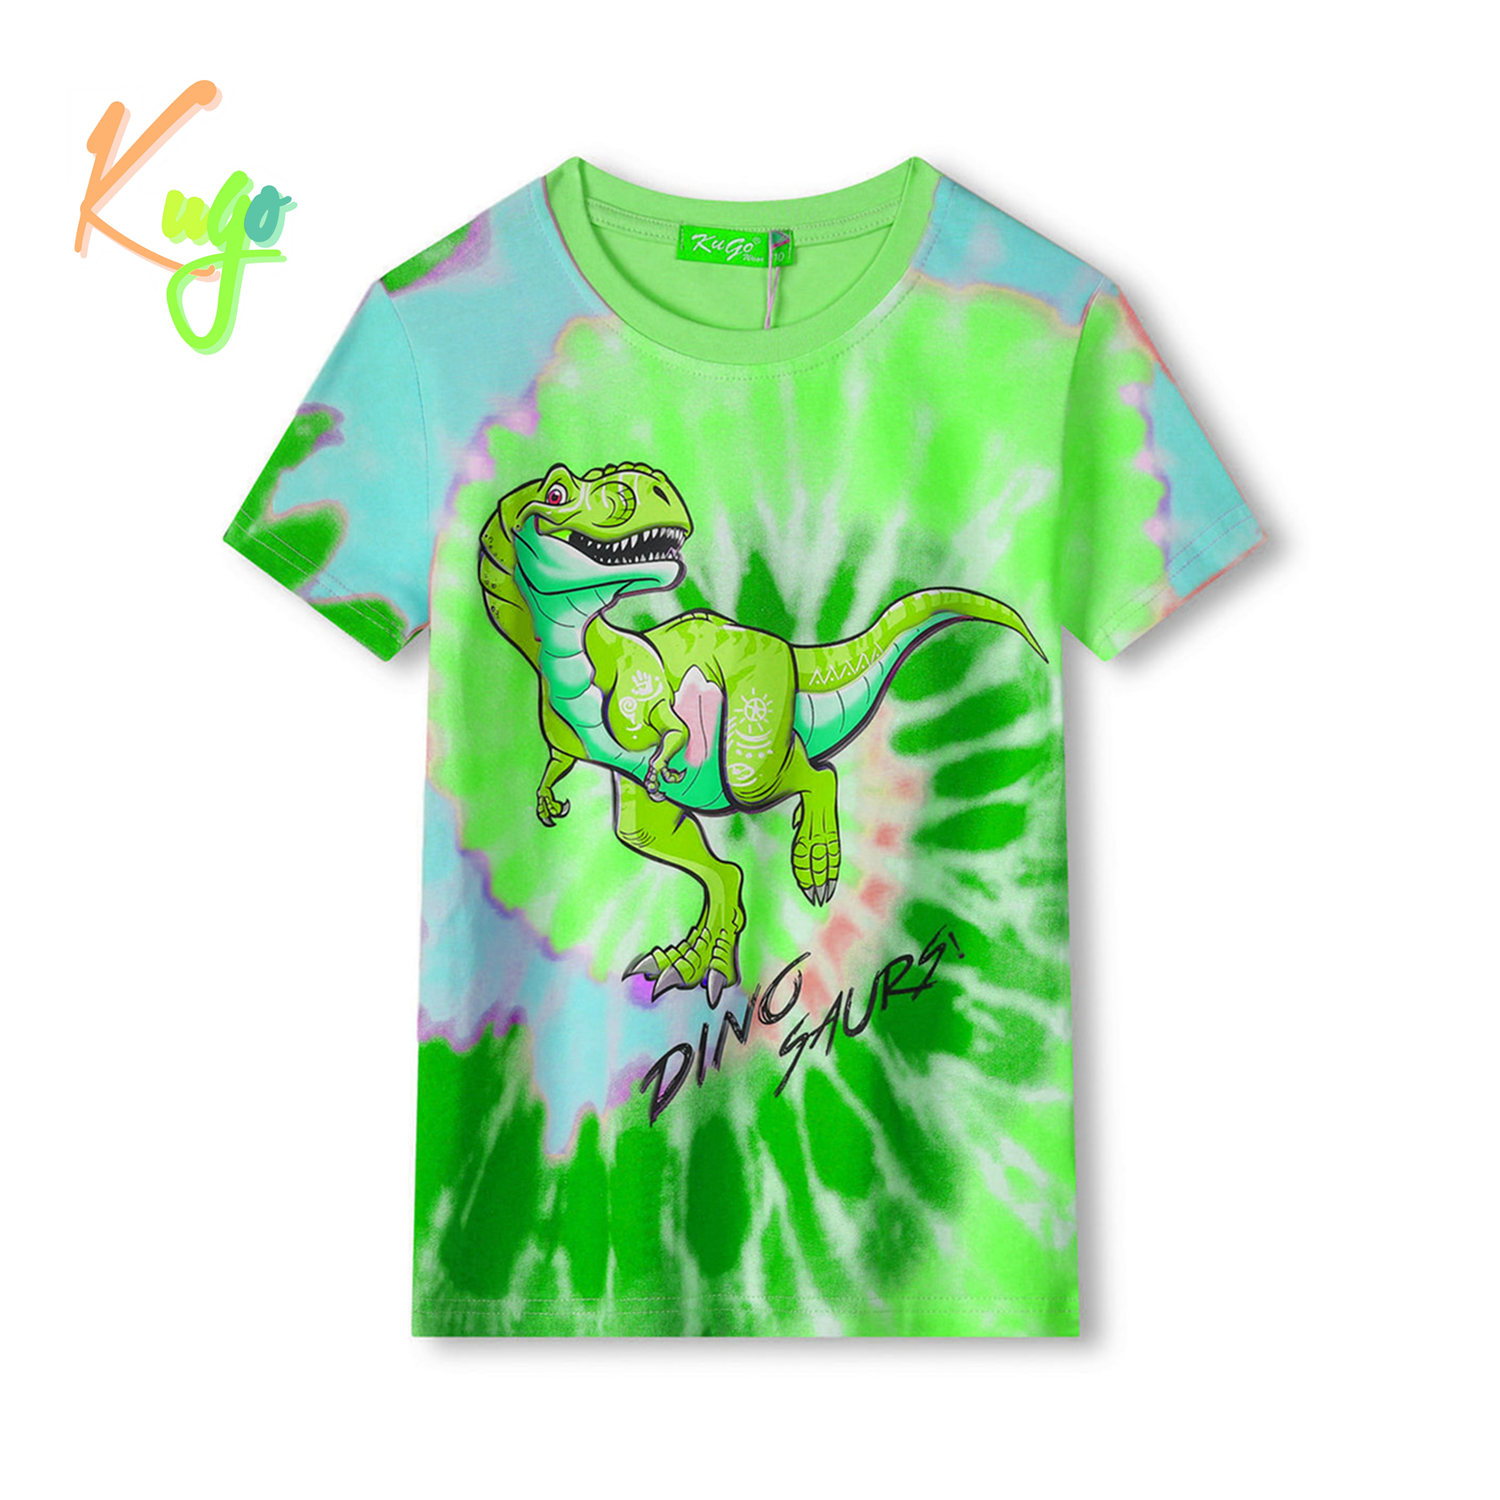 Chlapecké tričko - KUGO FC0301, zelená / modrý dinosaurus Barva: Zelená, Velikost: 98